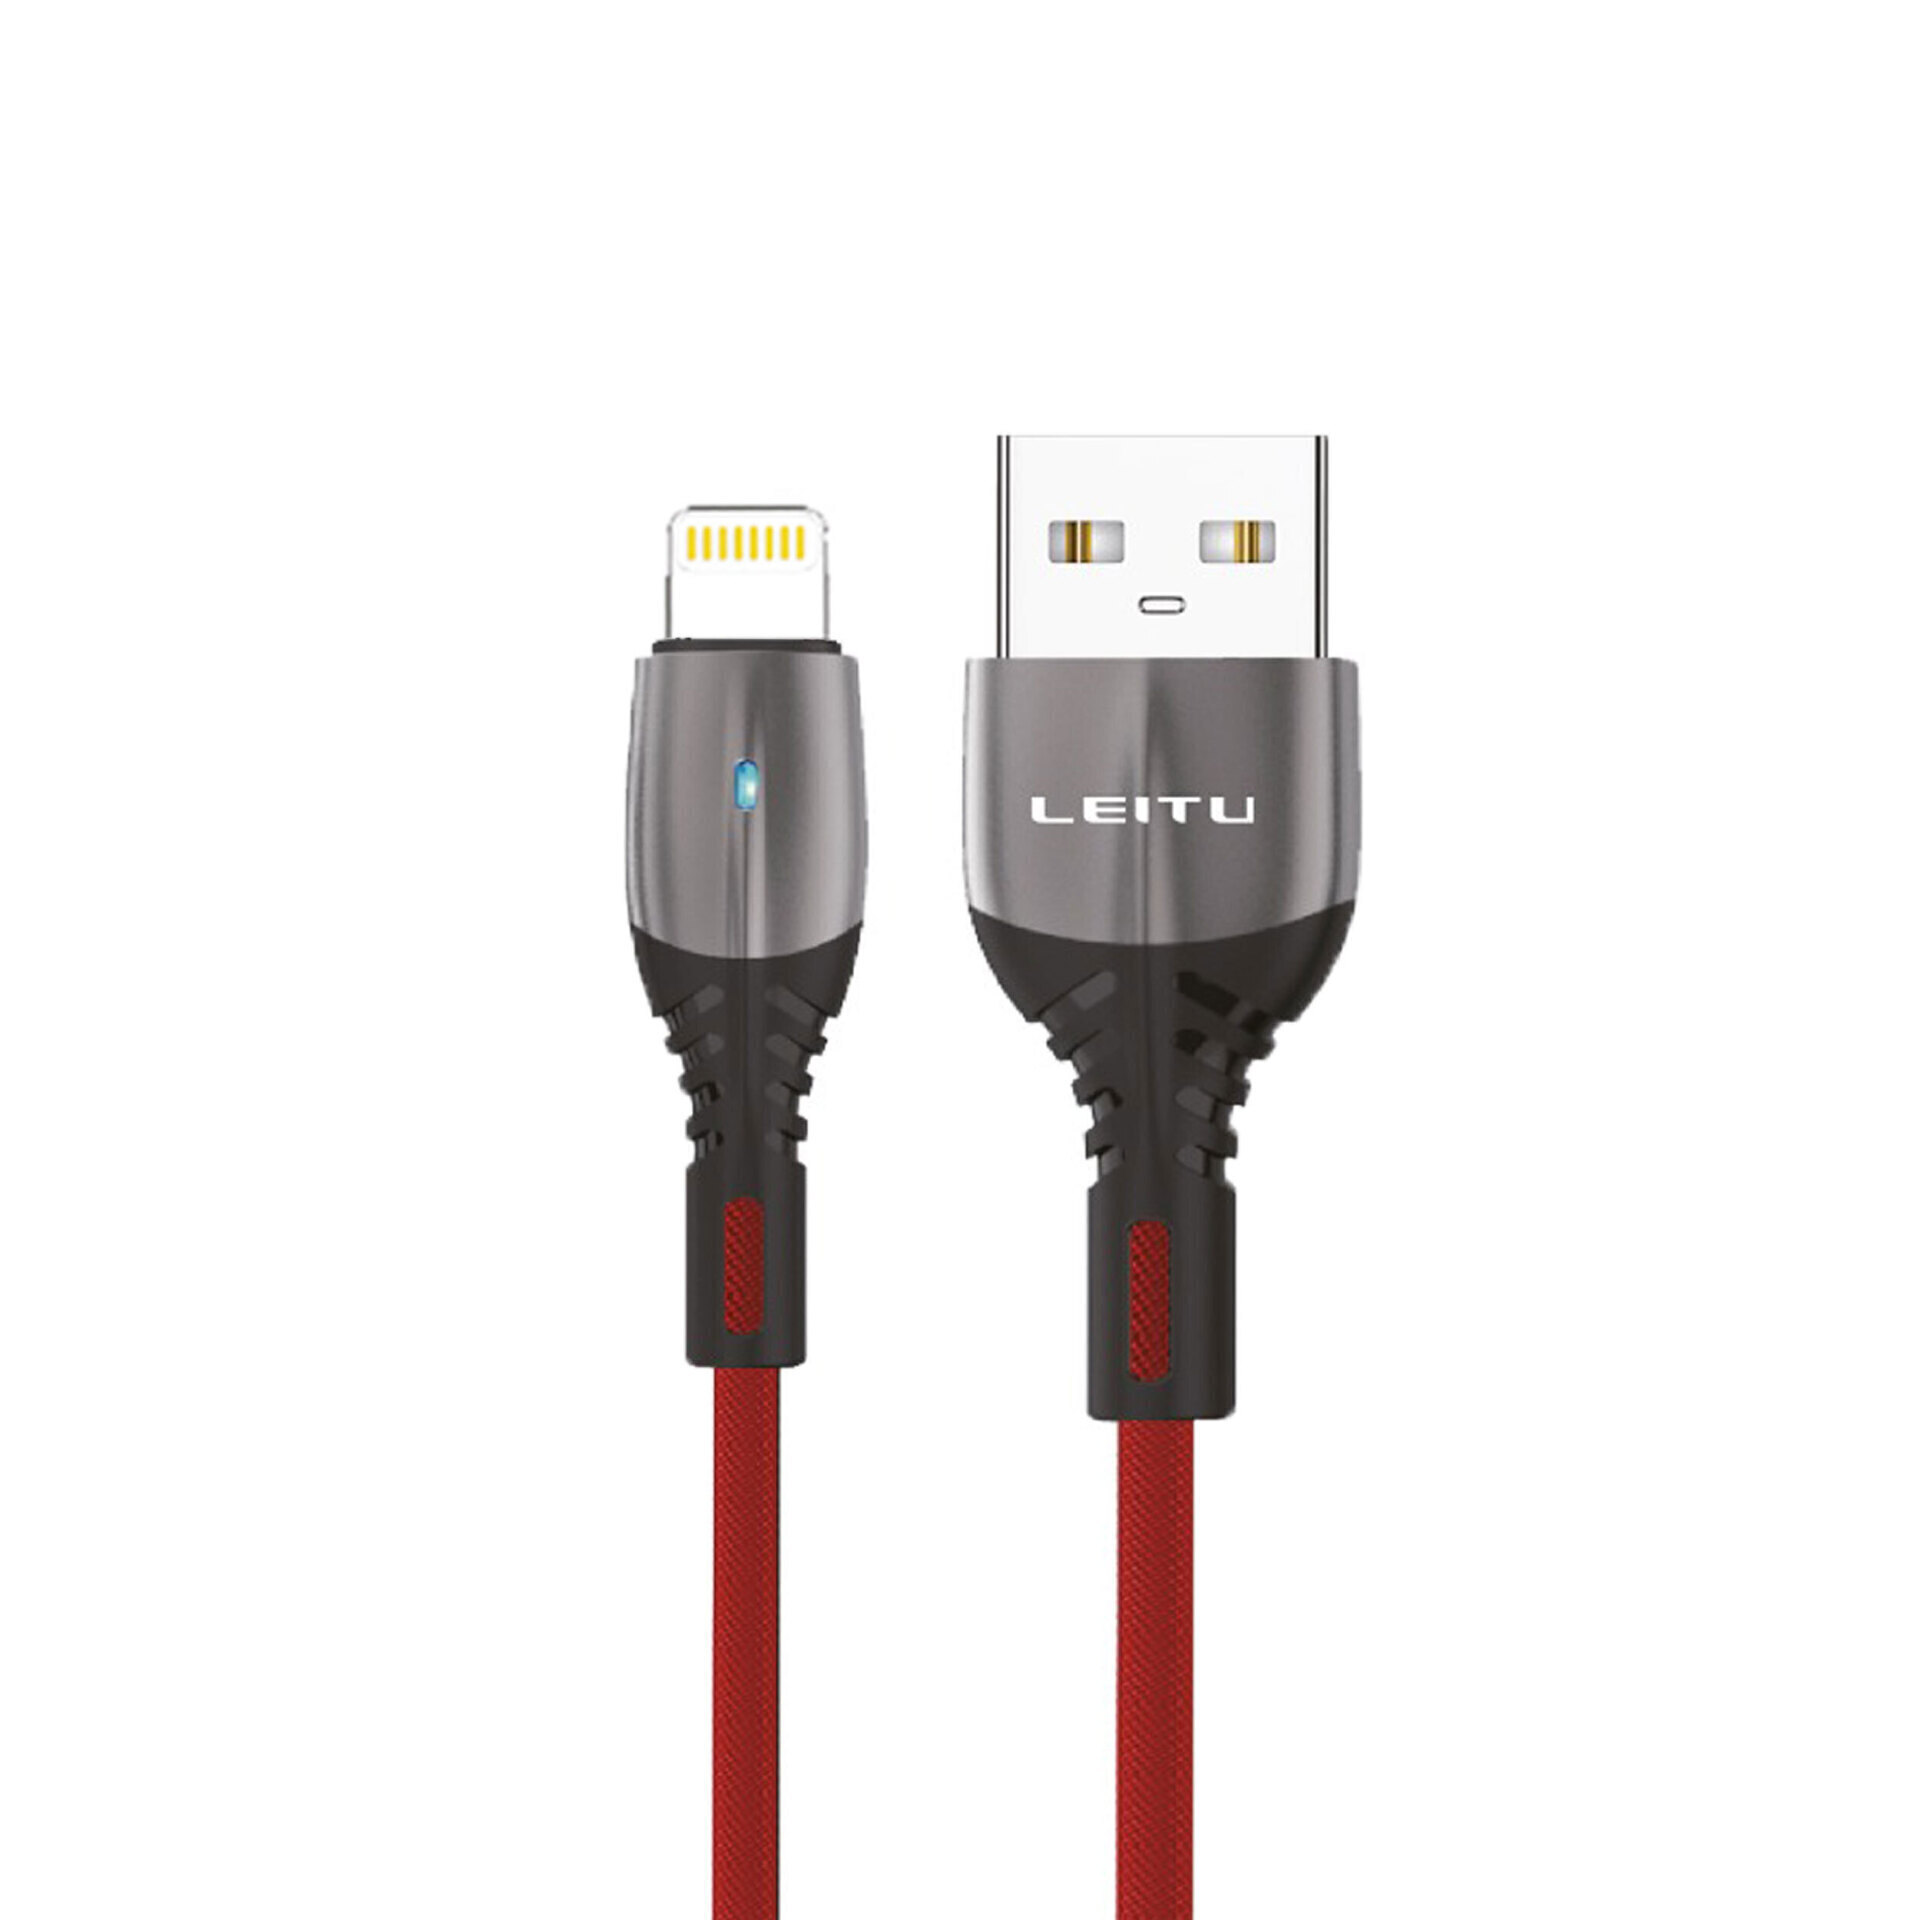  کابل تبدیل USB به Lightning 